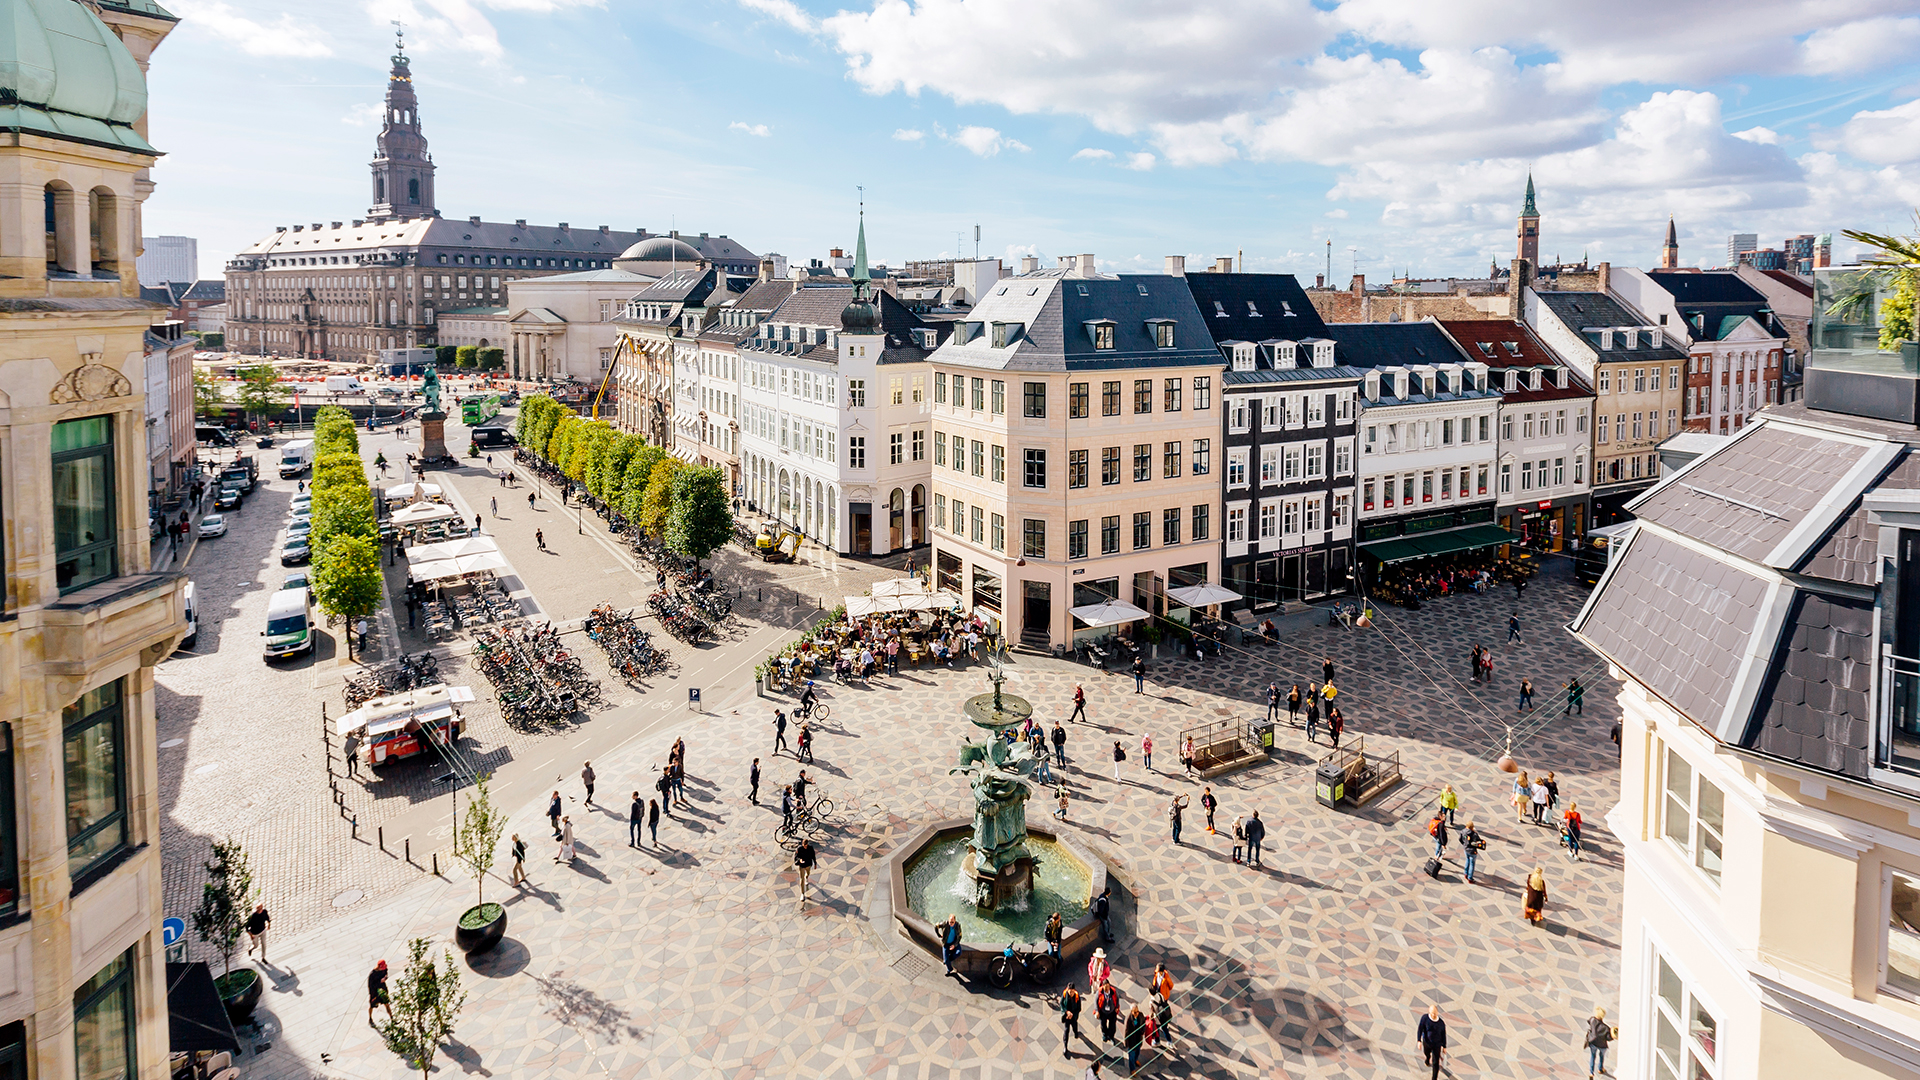 En Copenhague la inflación estuvo cerca del 9% en julio y hay preocupación ya que esto no ha sucedido en varias décadas.  El gobierno danés ha puesto un tope a los precios de alquiler (Getty Images)